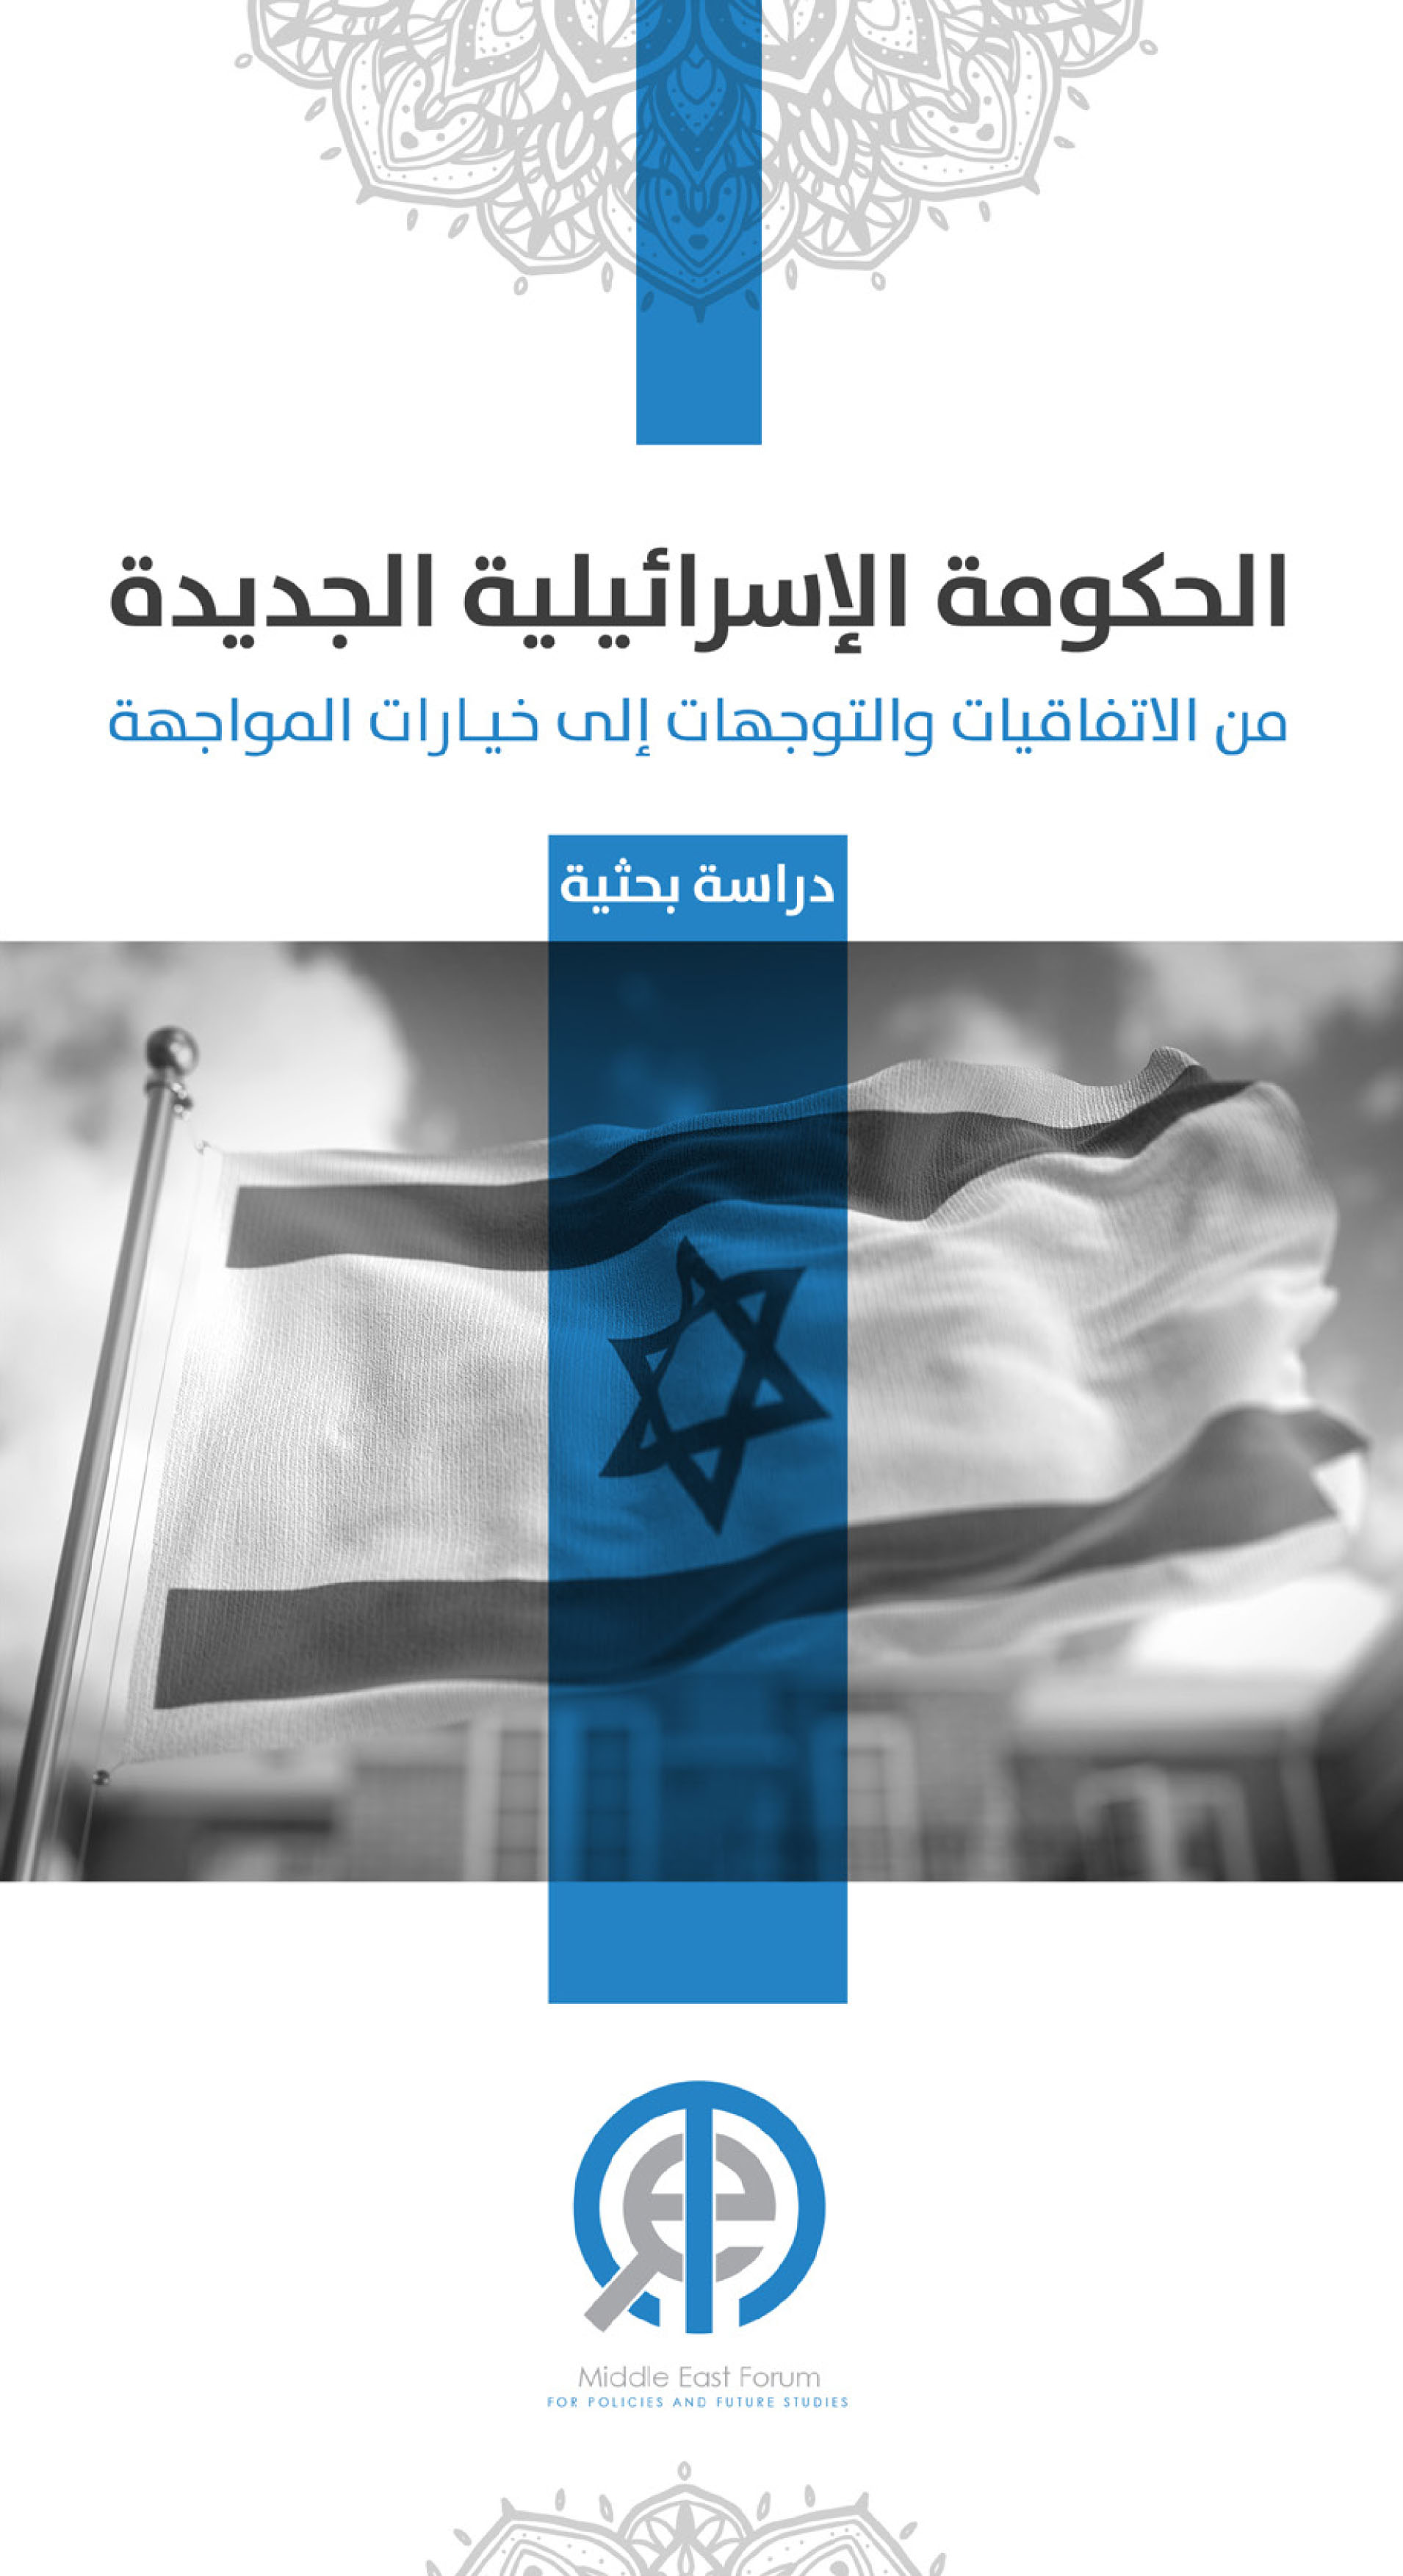 الحكومة الإسرائيلية الجديدة من الاتفاقيات والتوجهات إلى خيارات المواجهة